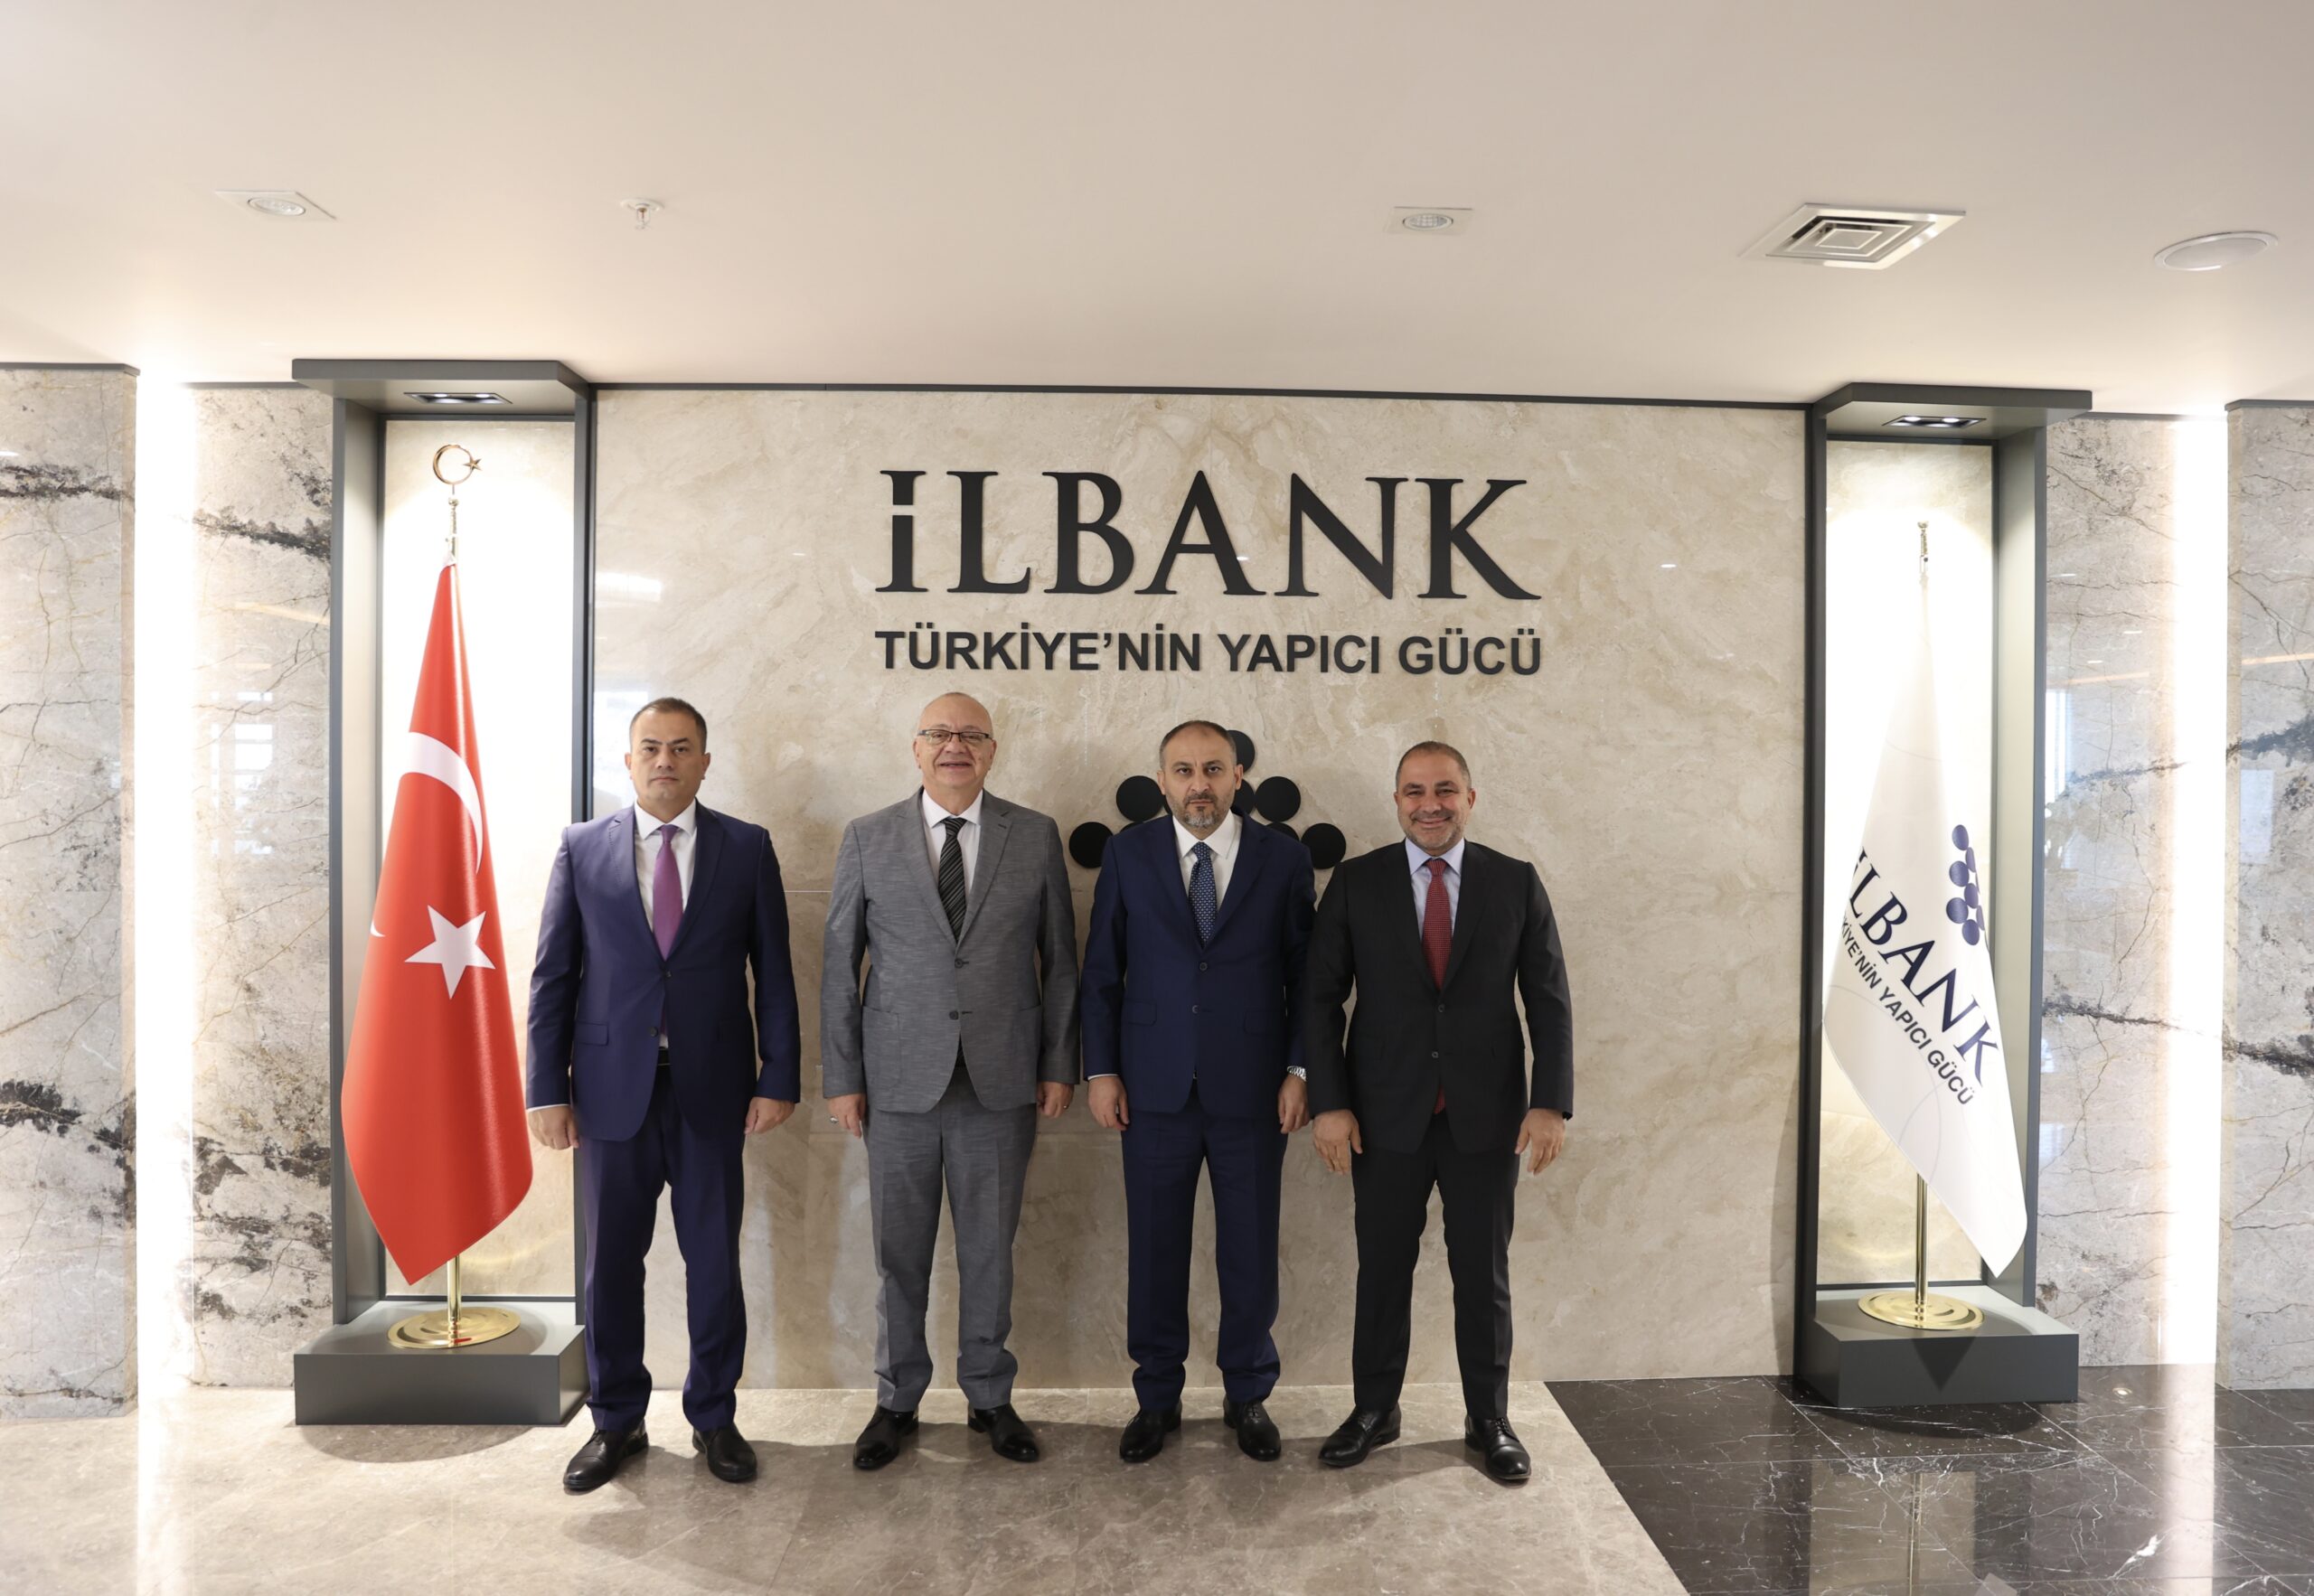 Manisa Büyükşehir Belediye Başkanı Cengiz Ergün, İller Bankası Genel Müdürlüğünü de ziyaret etti.